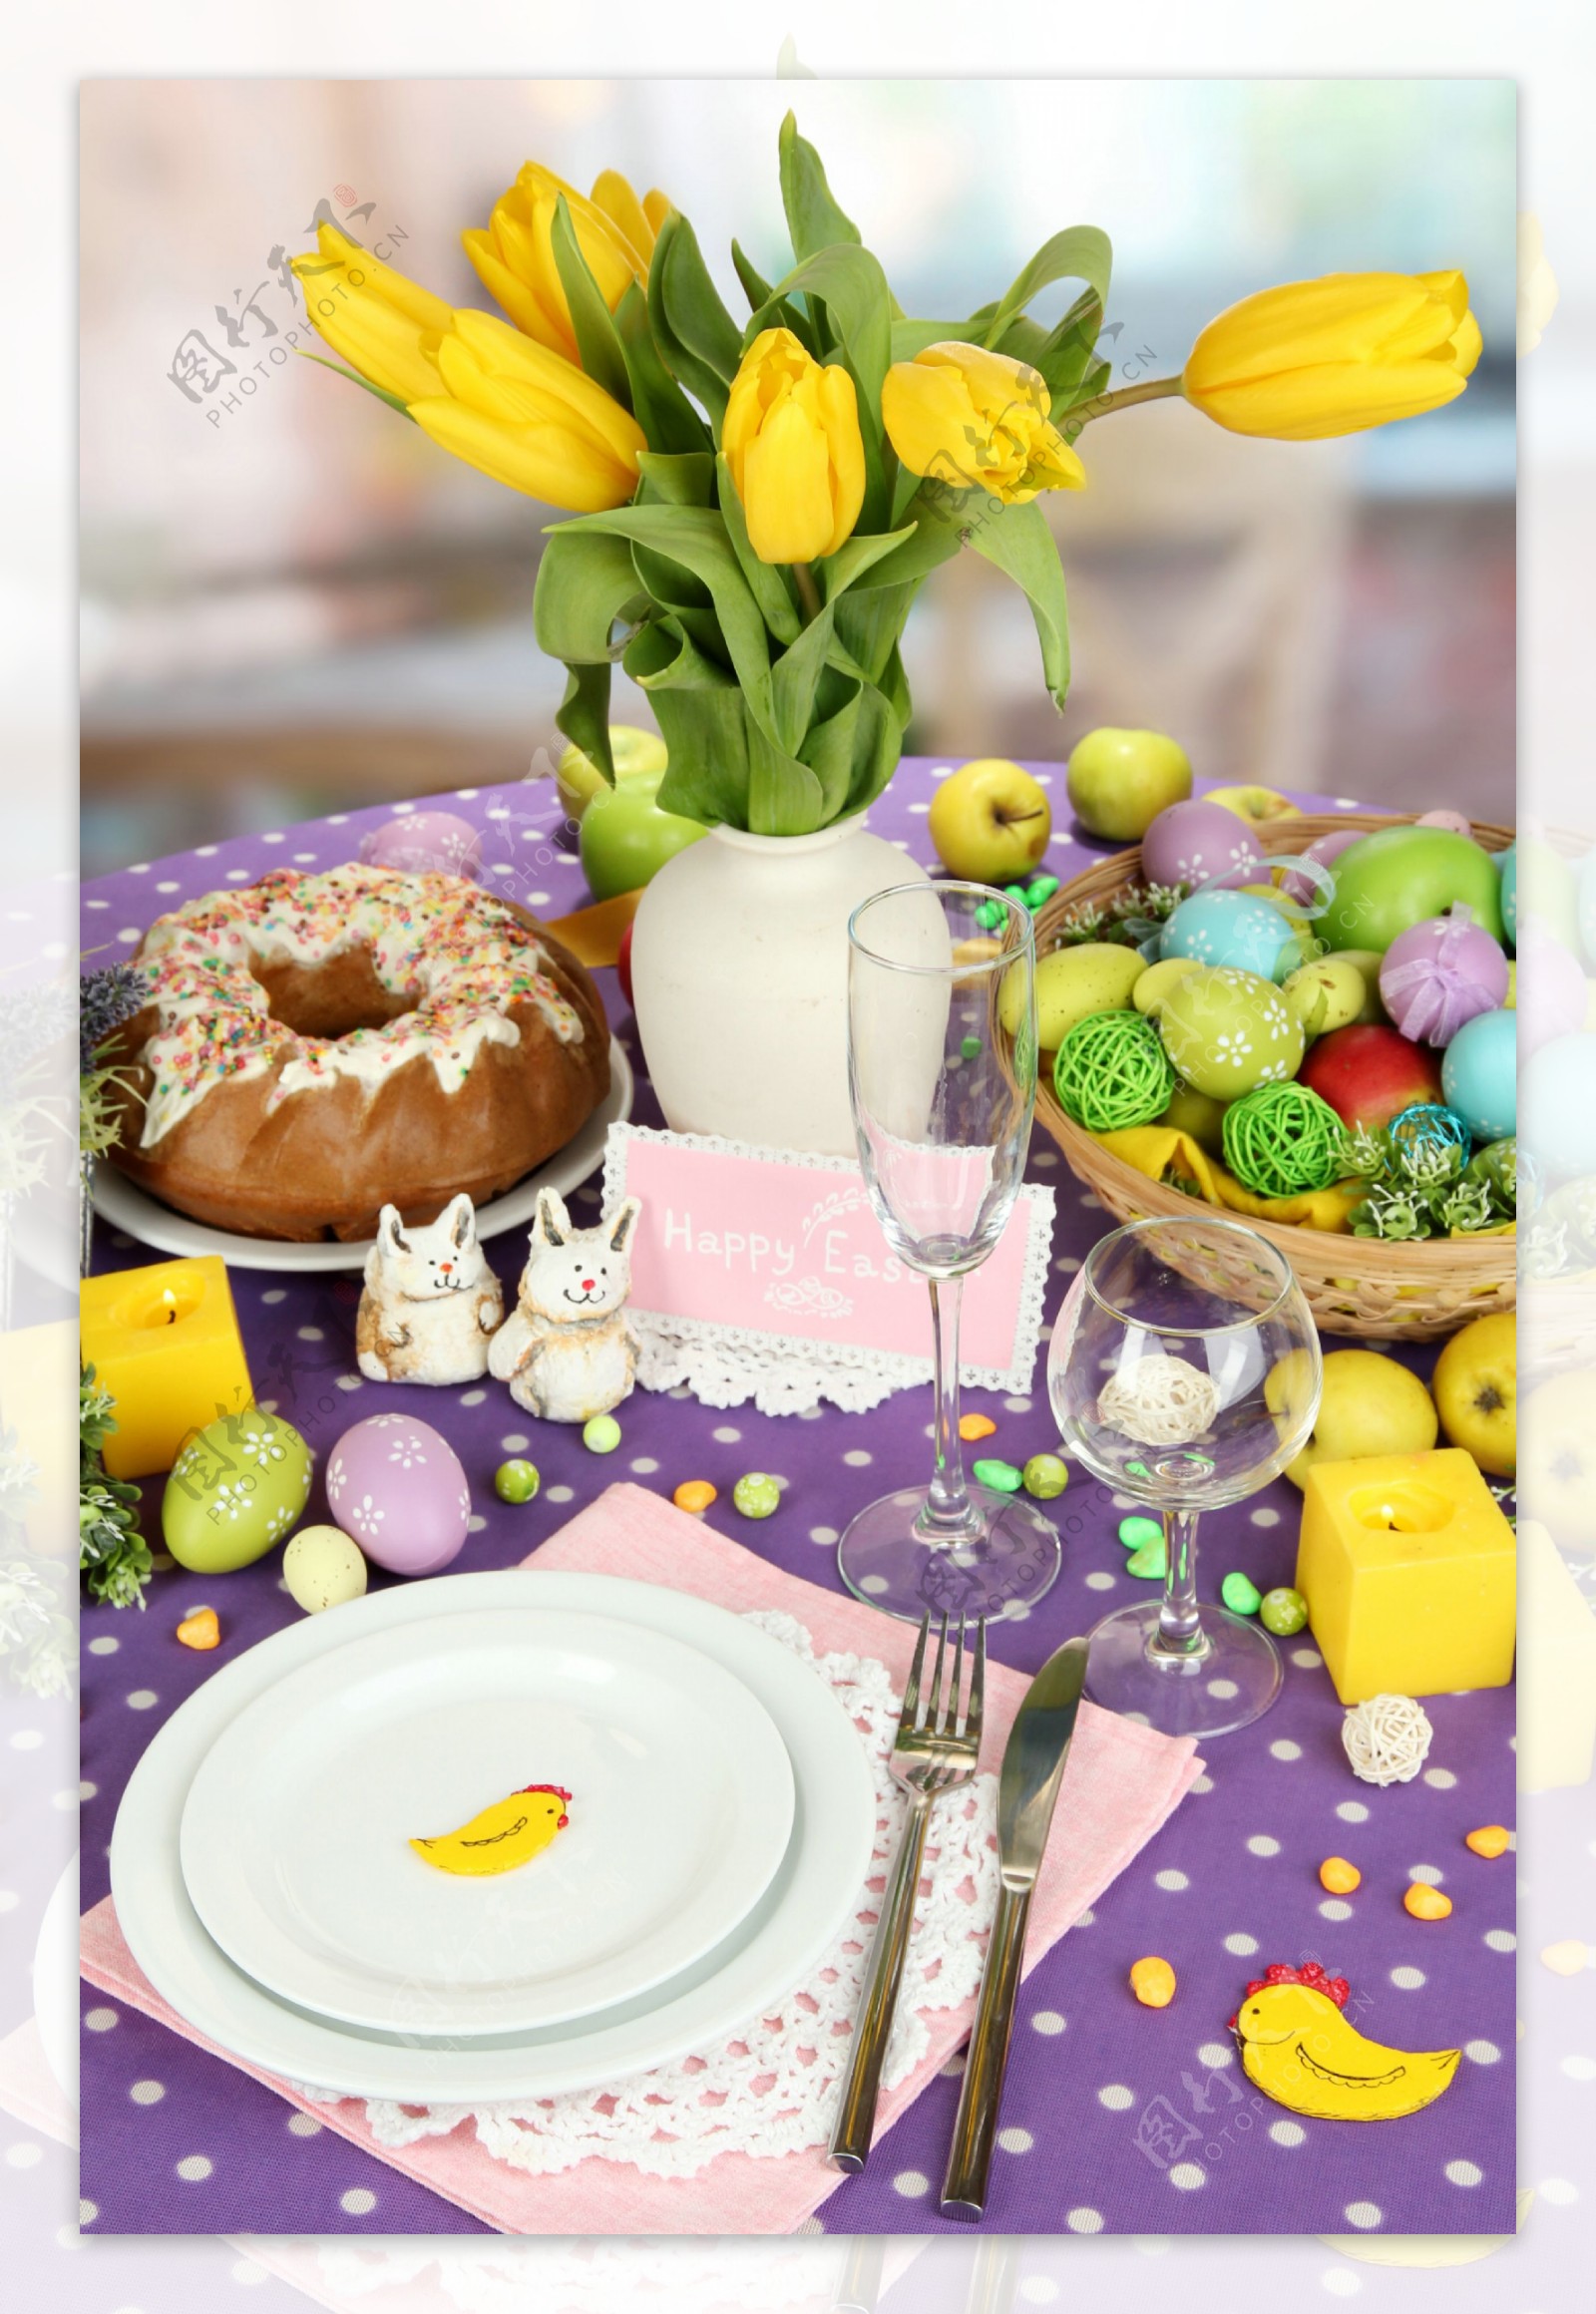 黄色郁金香与复活节美食图片